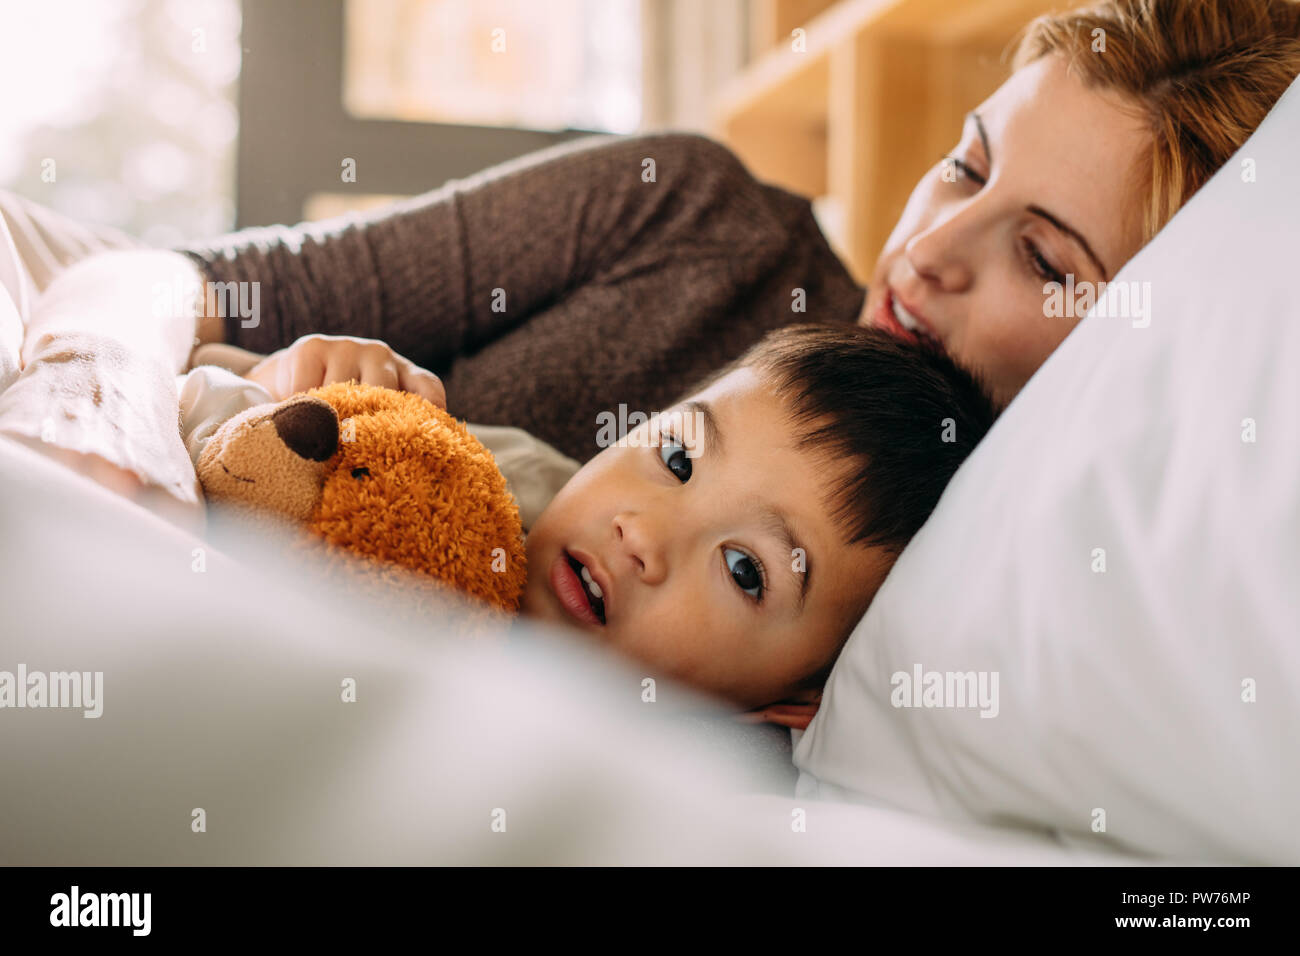 Süße kleine Junge hielt seinen Teddybären und liegend auf Bett mit seiner Mutter. Kleines Kind im Bett mit seinem Spielzeug und Mutter. Stockfoto